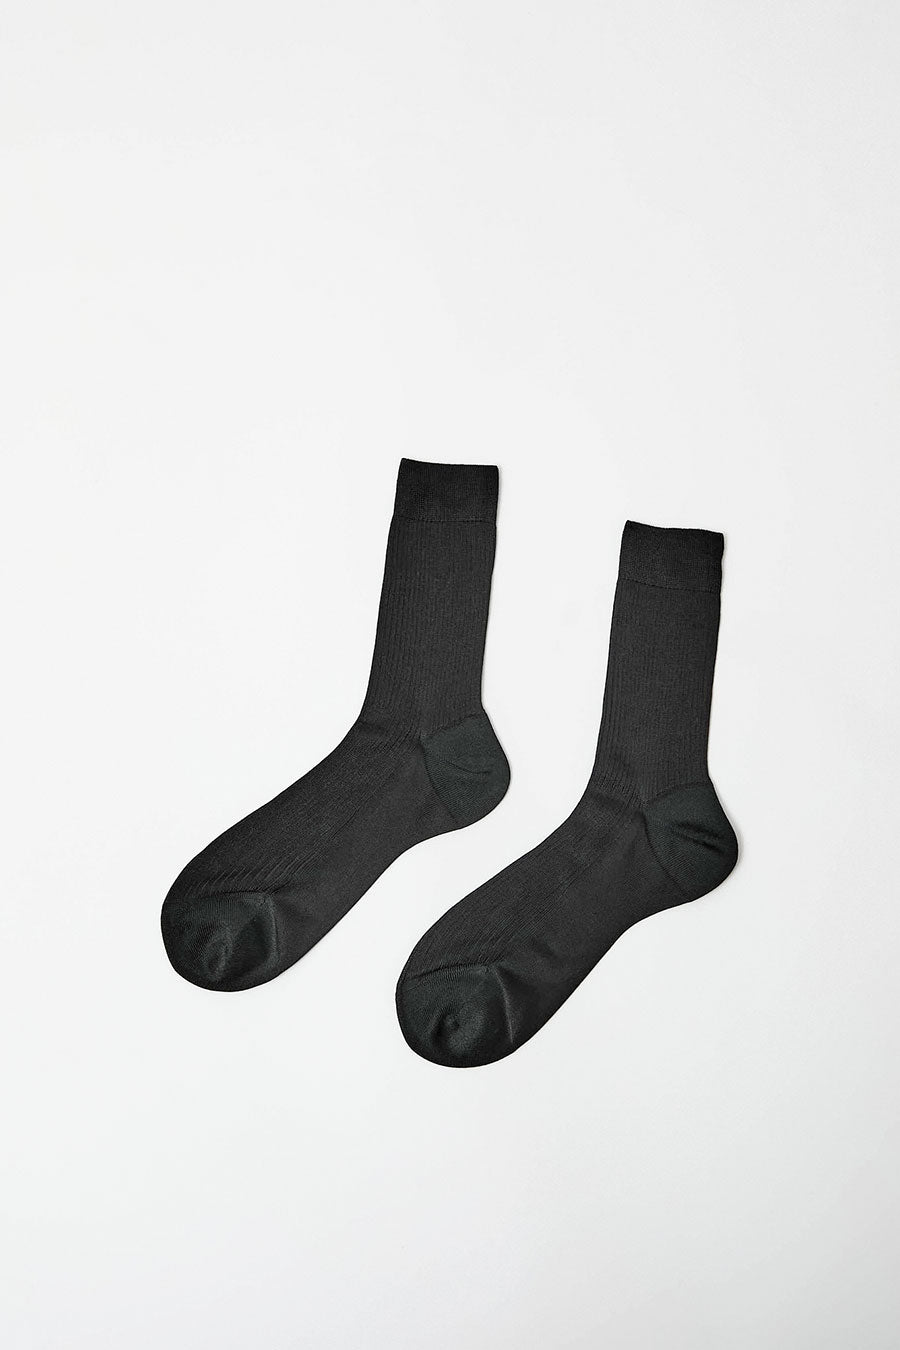 Maria La Rosa Silk Ribbed Ankle Socks in Nero